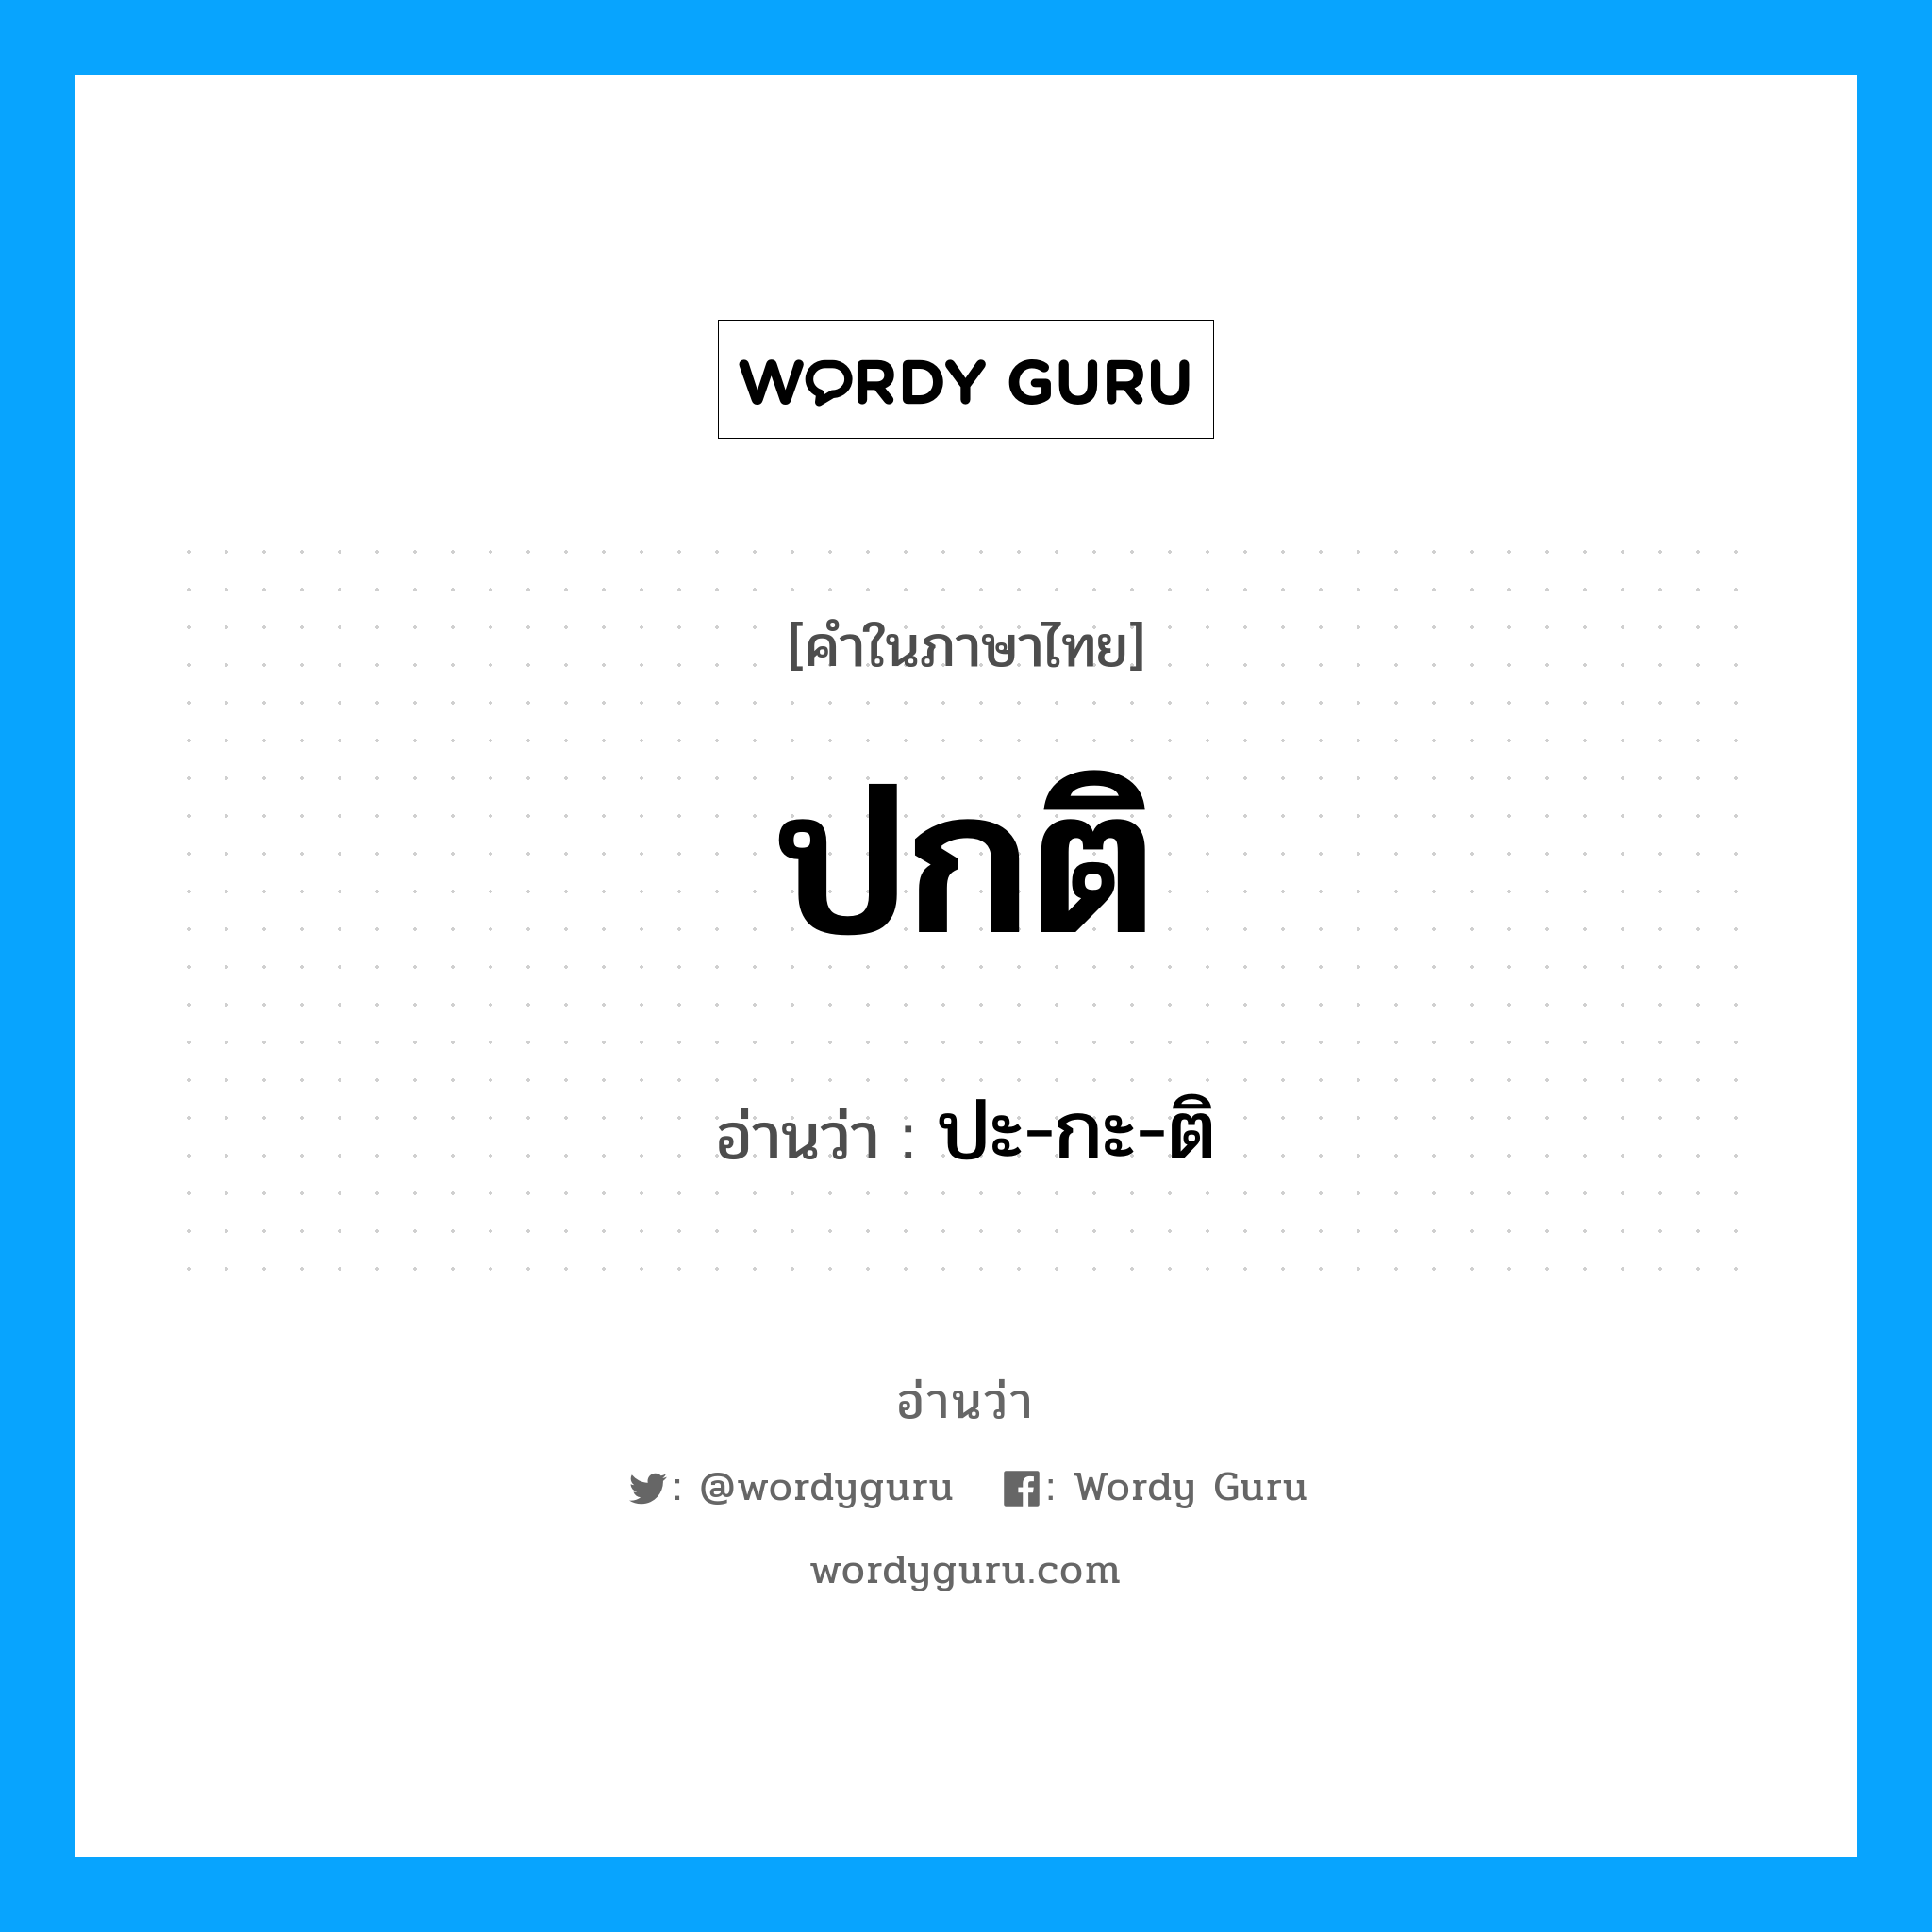 ปะ-กะ-ติ เป็นคำอ่านของคำไหน?, คำในภาษาไทย ปะ-กะ-ติ อ่านว่า ปกติ